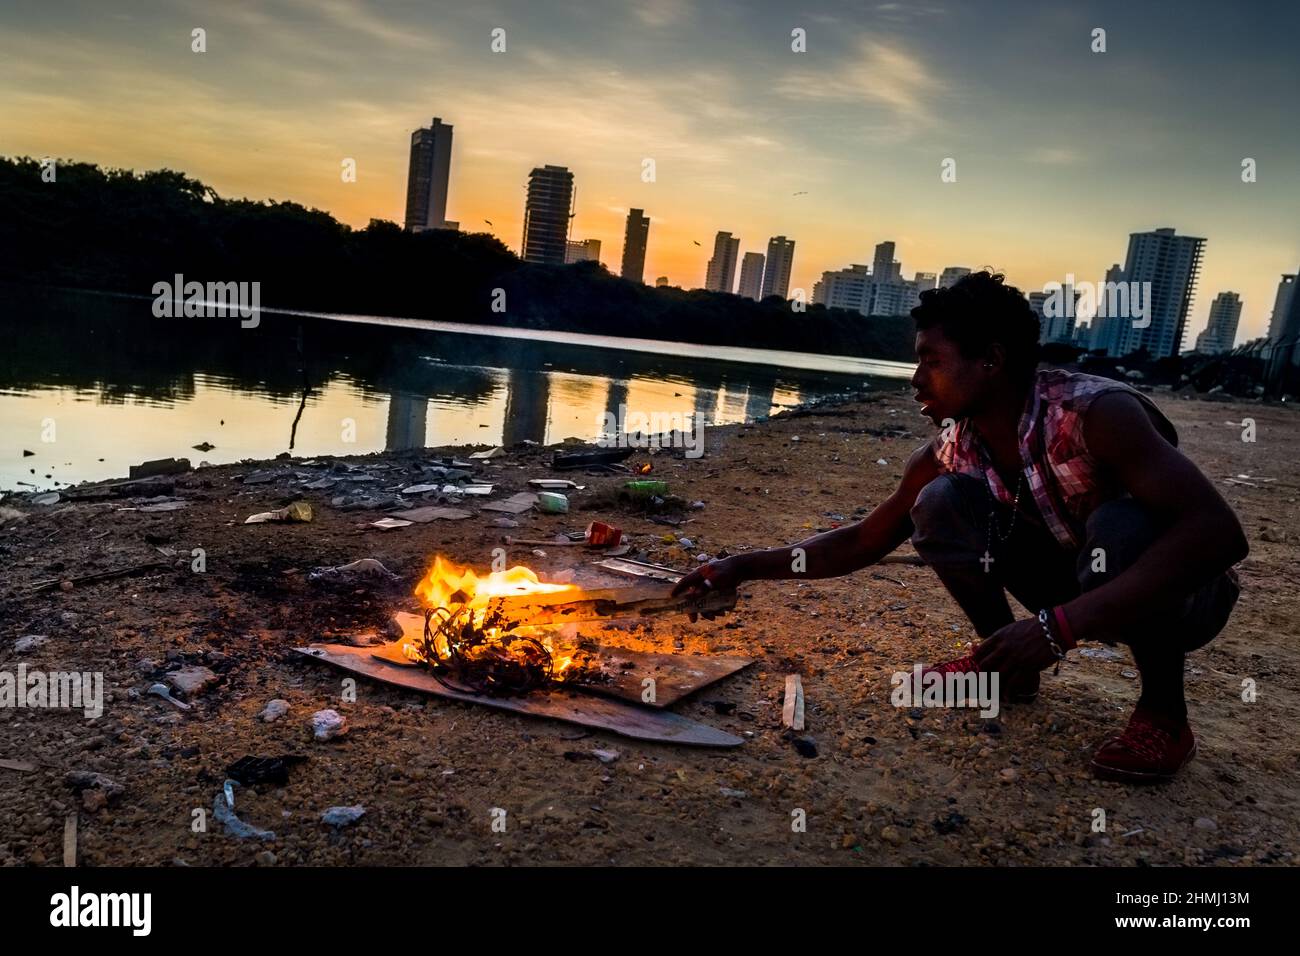 Un jeune Afro-colombien brûle des fils électriques pour récupérer du cuivre sur la rive de la lagune de la mer à Bahía de Manga, un quartier luxueux de Carta Banque D'Images